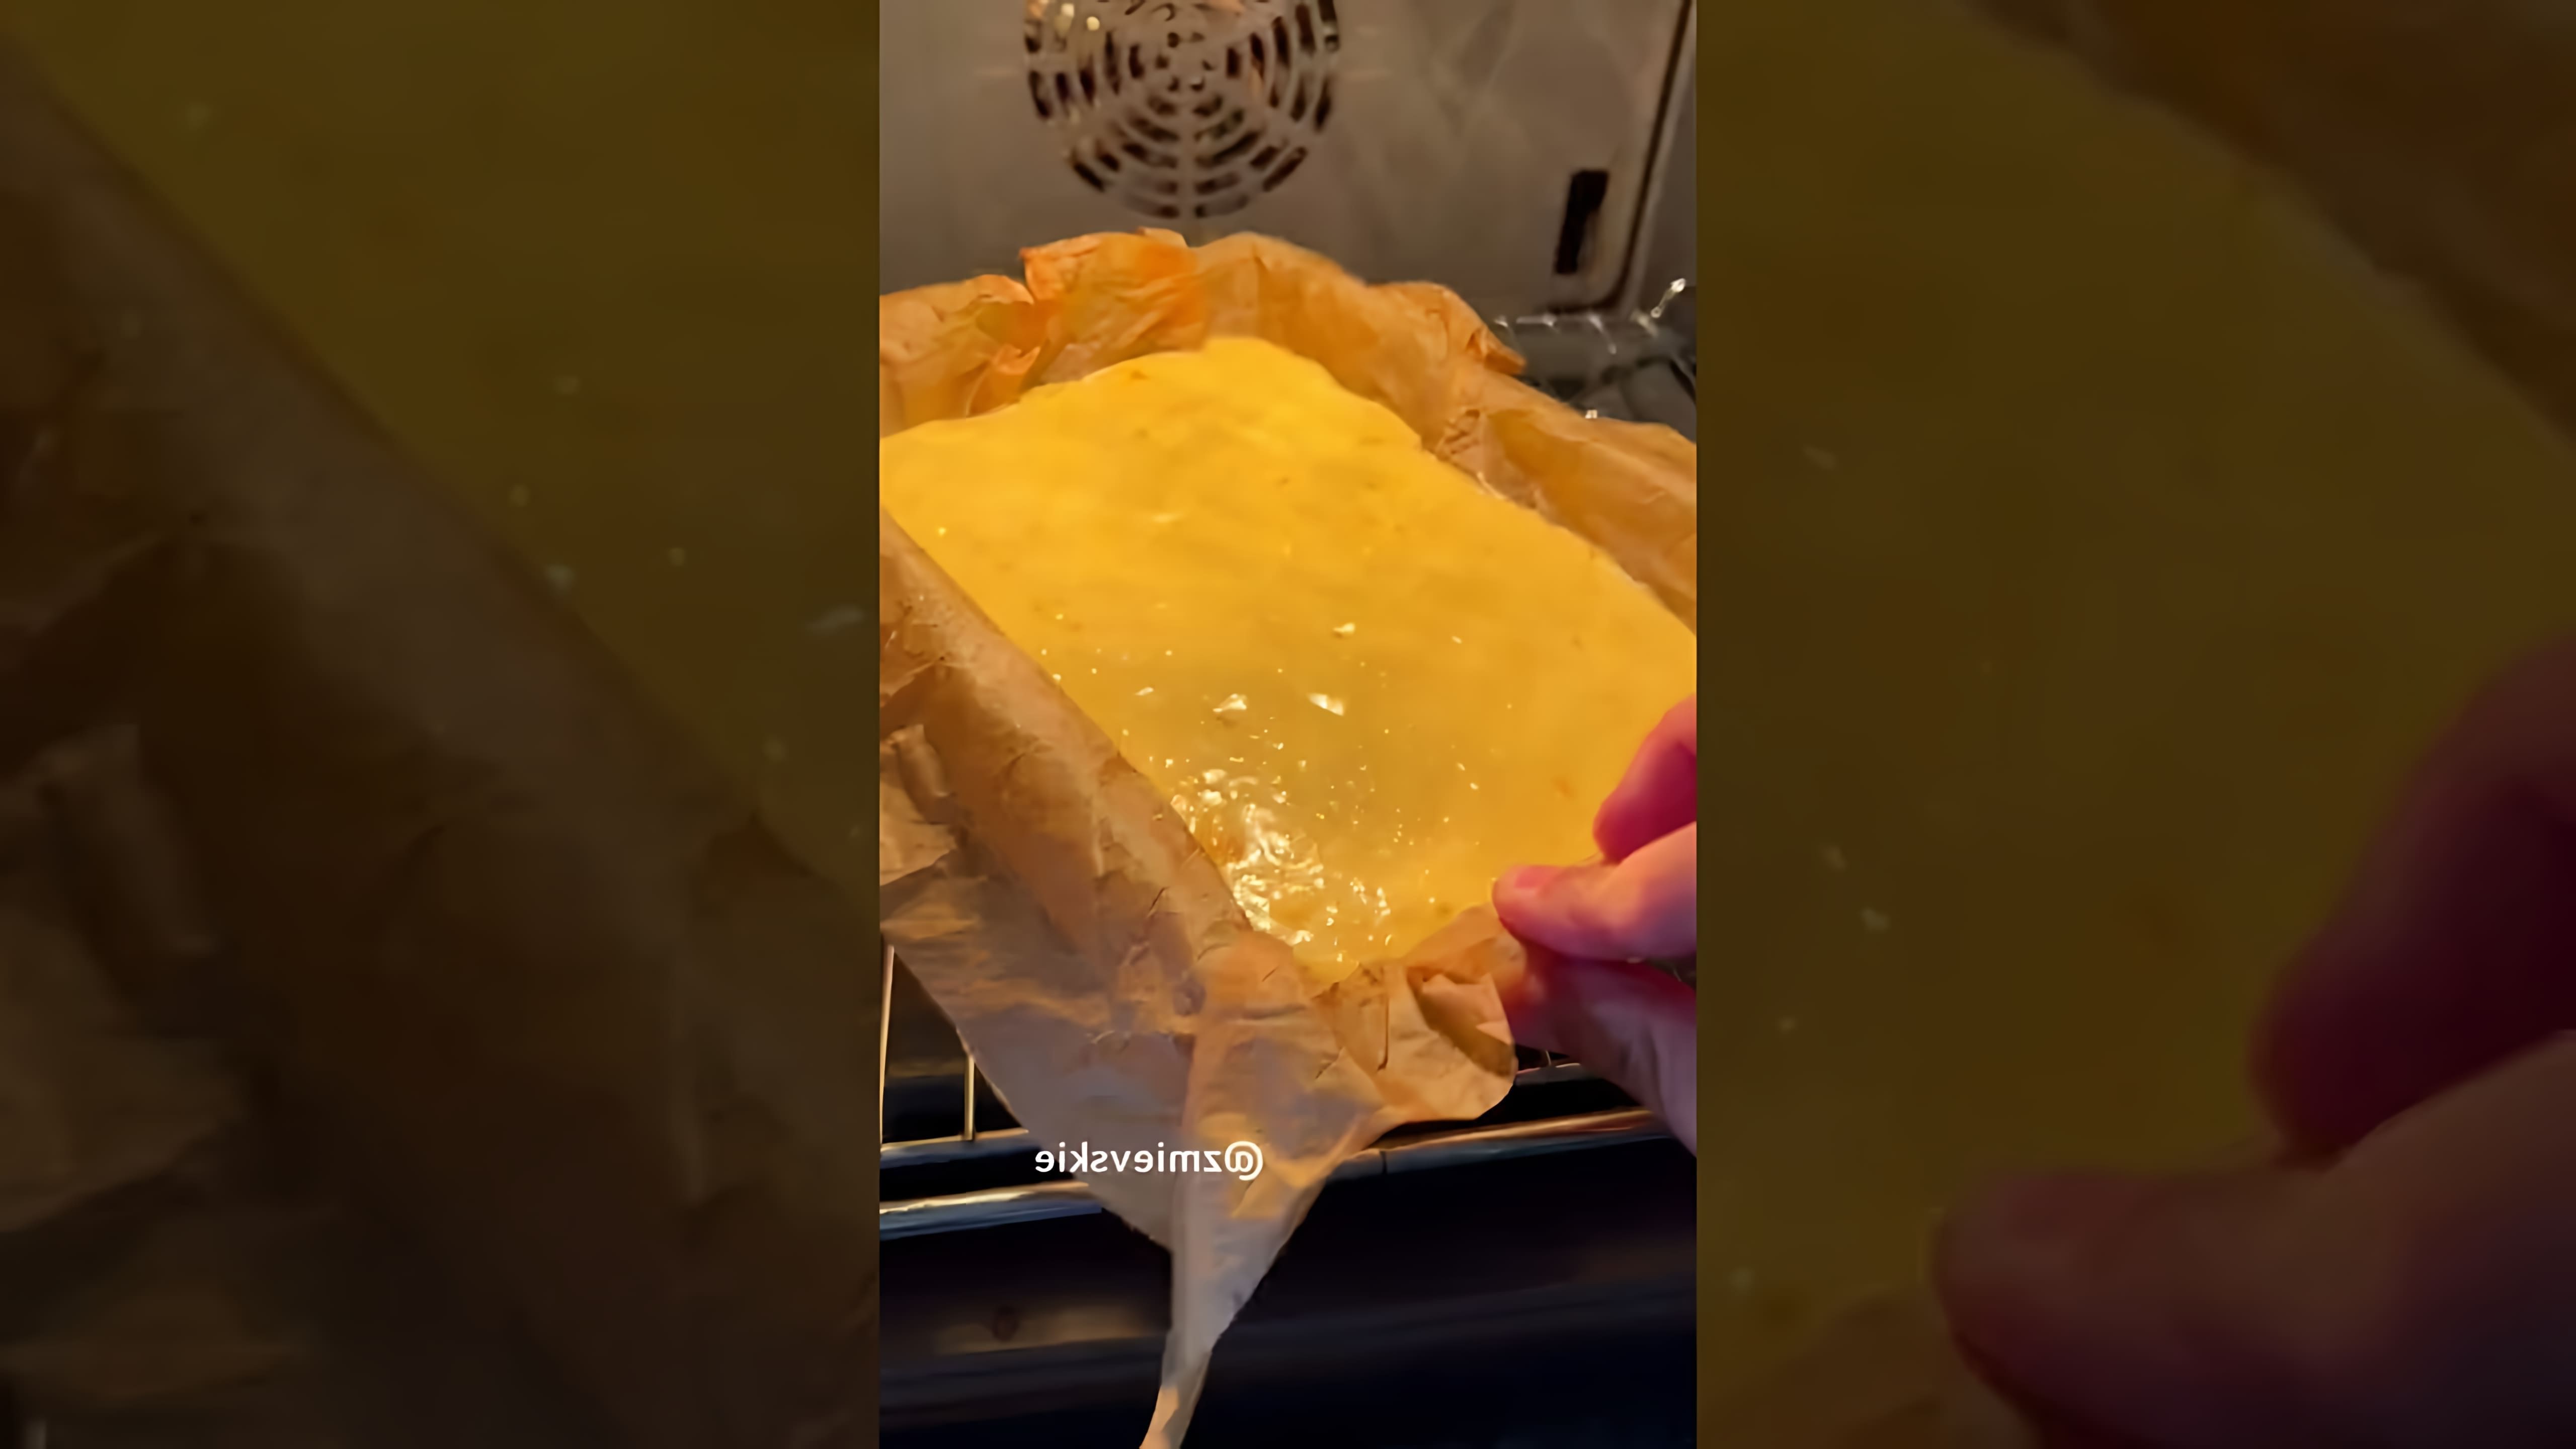 "Апельсиновый кекс" - это видео-ролик, который демонстрирует процесс приготовления апельсинового кекса